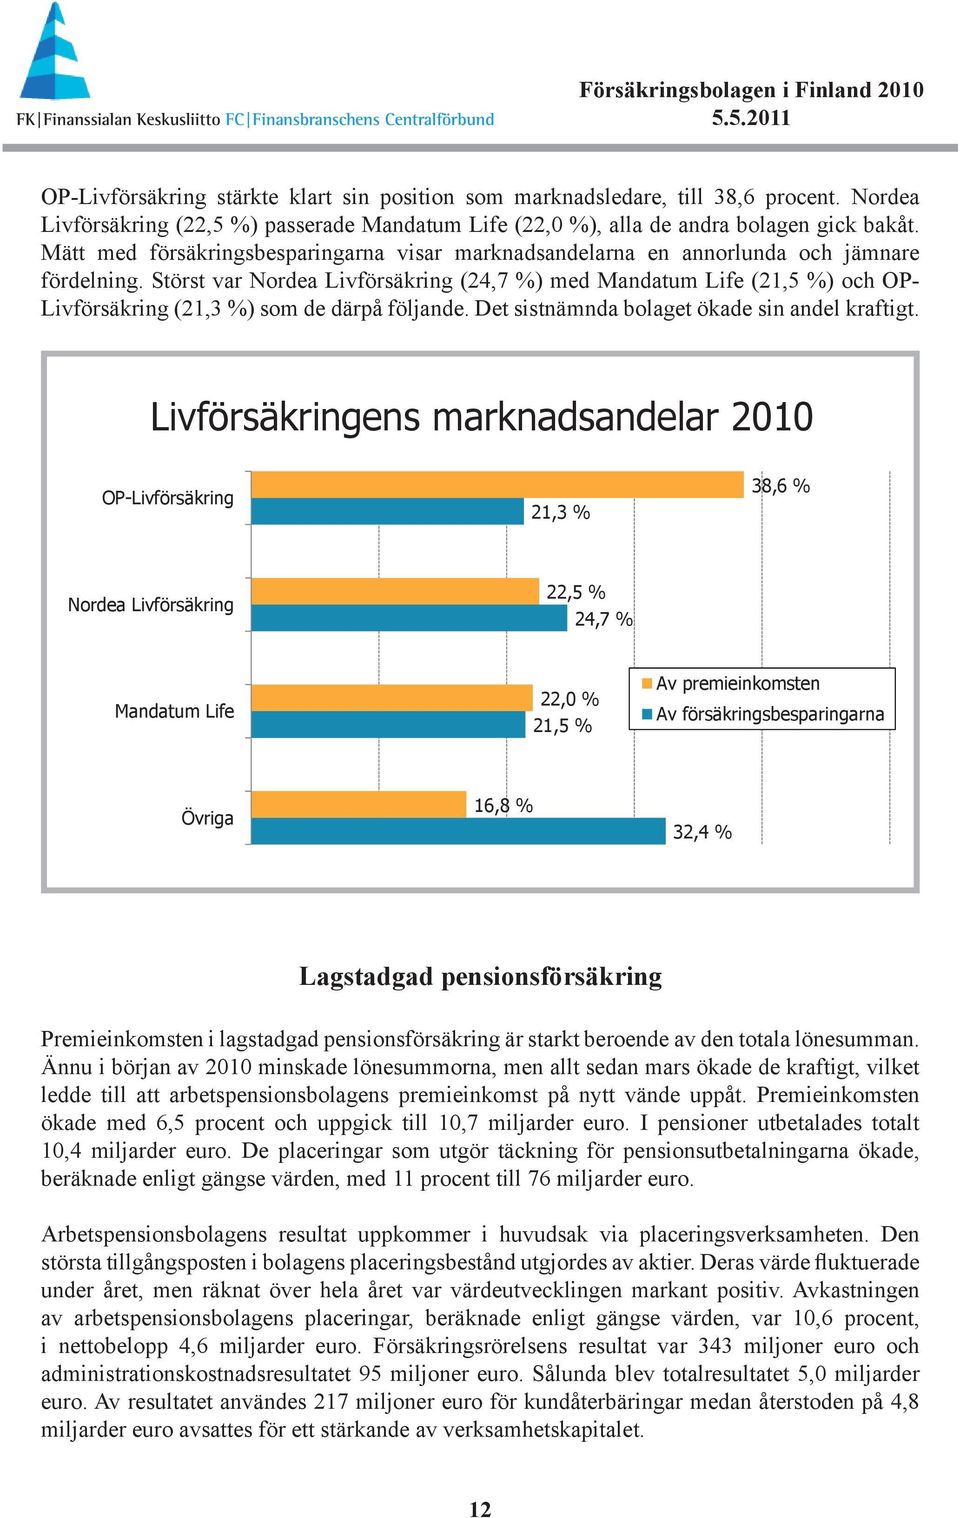 Störst var Nordea Livförsäkring (24,7 %) med Mandatum Life (21,5 %) och OP- Livförsäkring (21,3 %) som de därpå följande. Det sistnämnda bolaget ökade sin andel kraftigt.